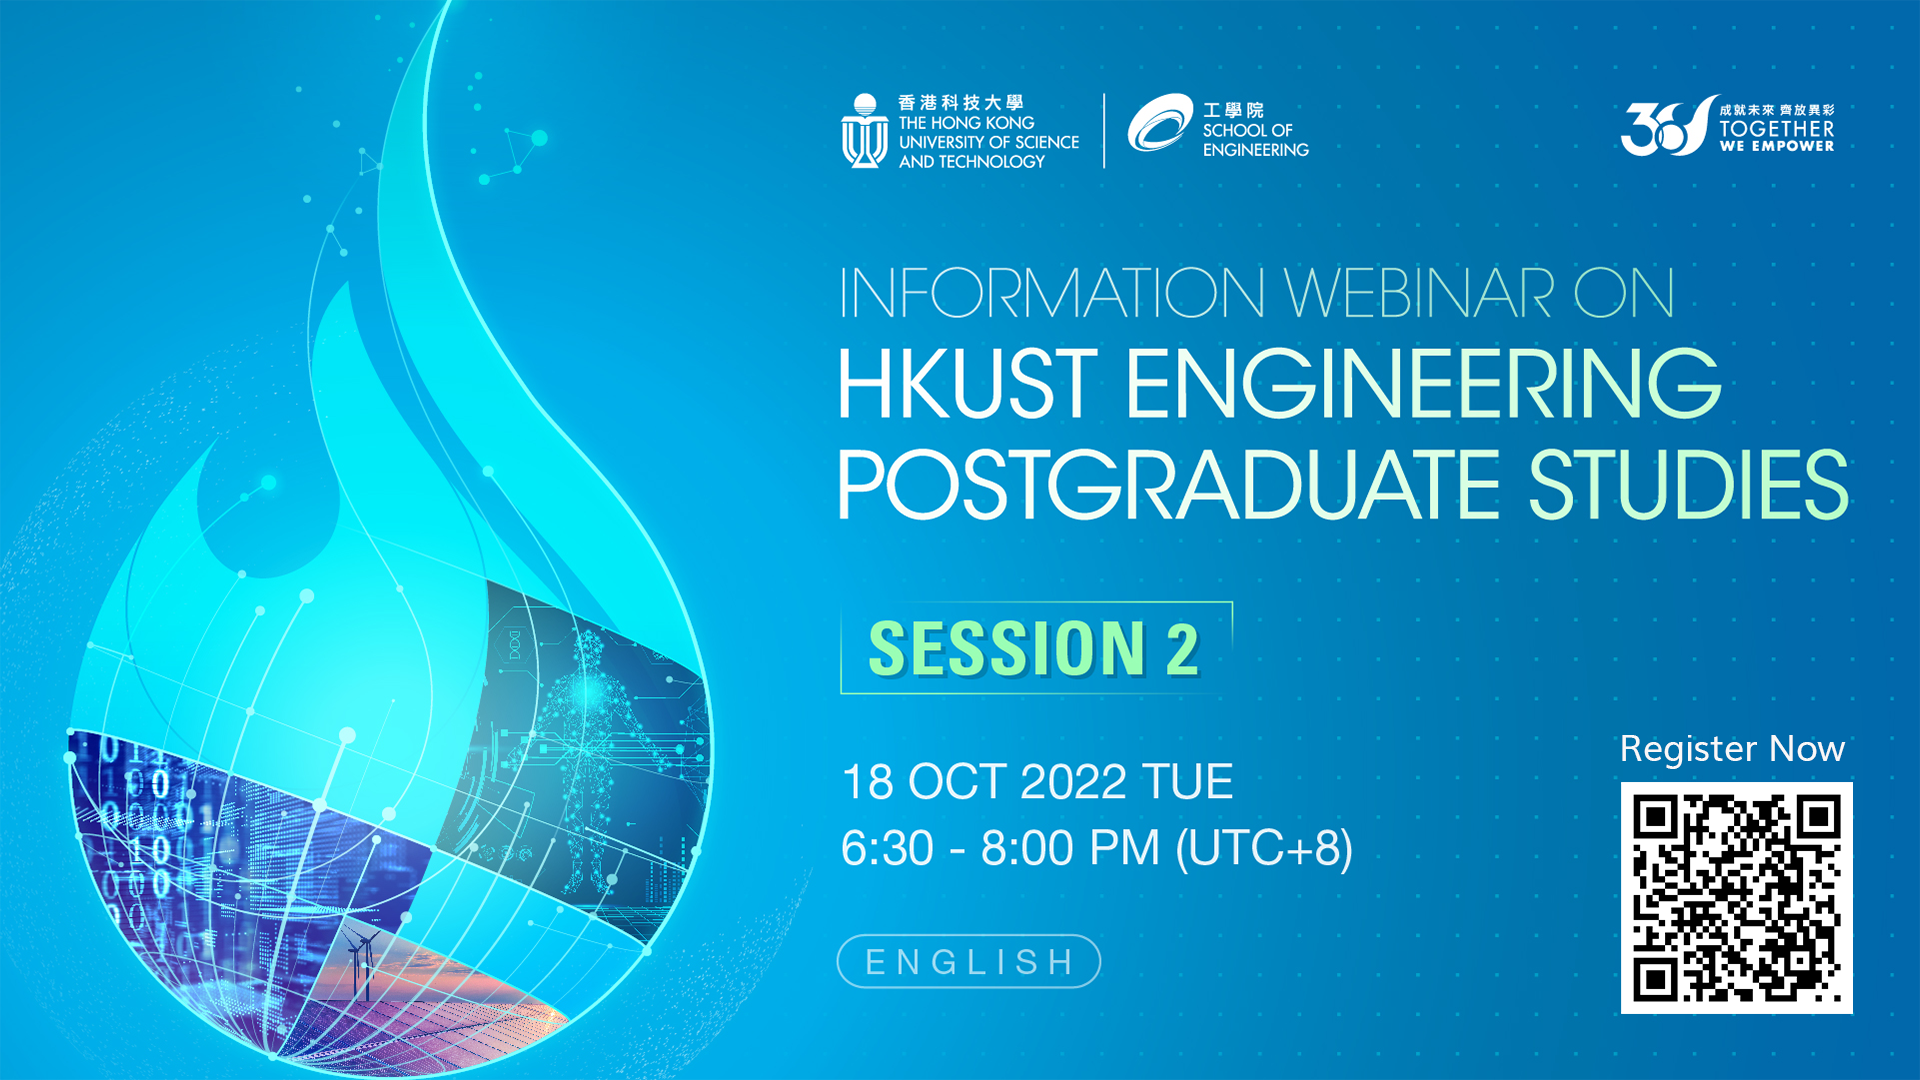 Information Webinar on HKUST Engineering Postgraduate Studies - Session 2